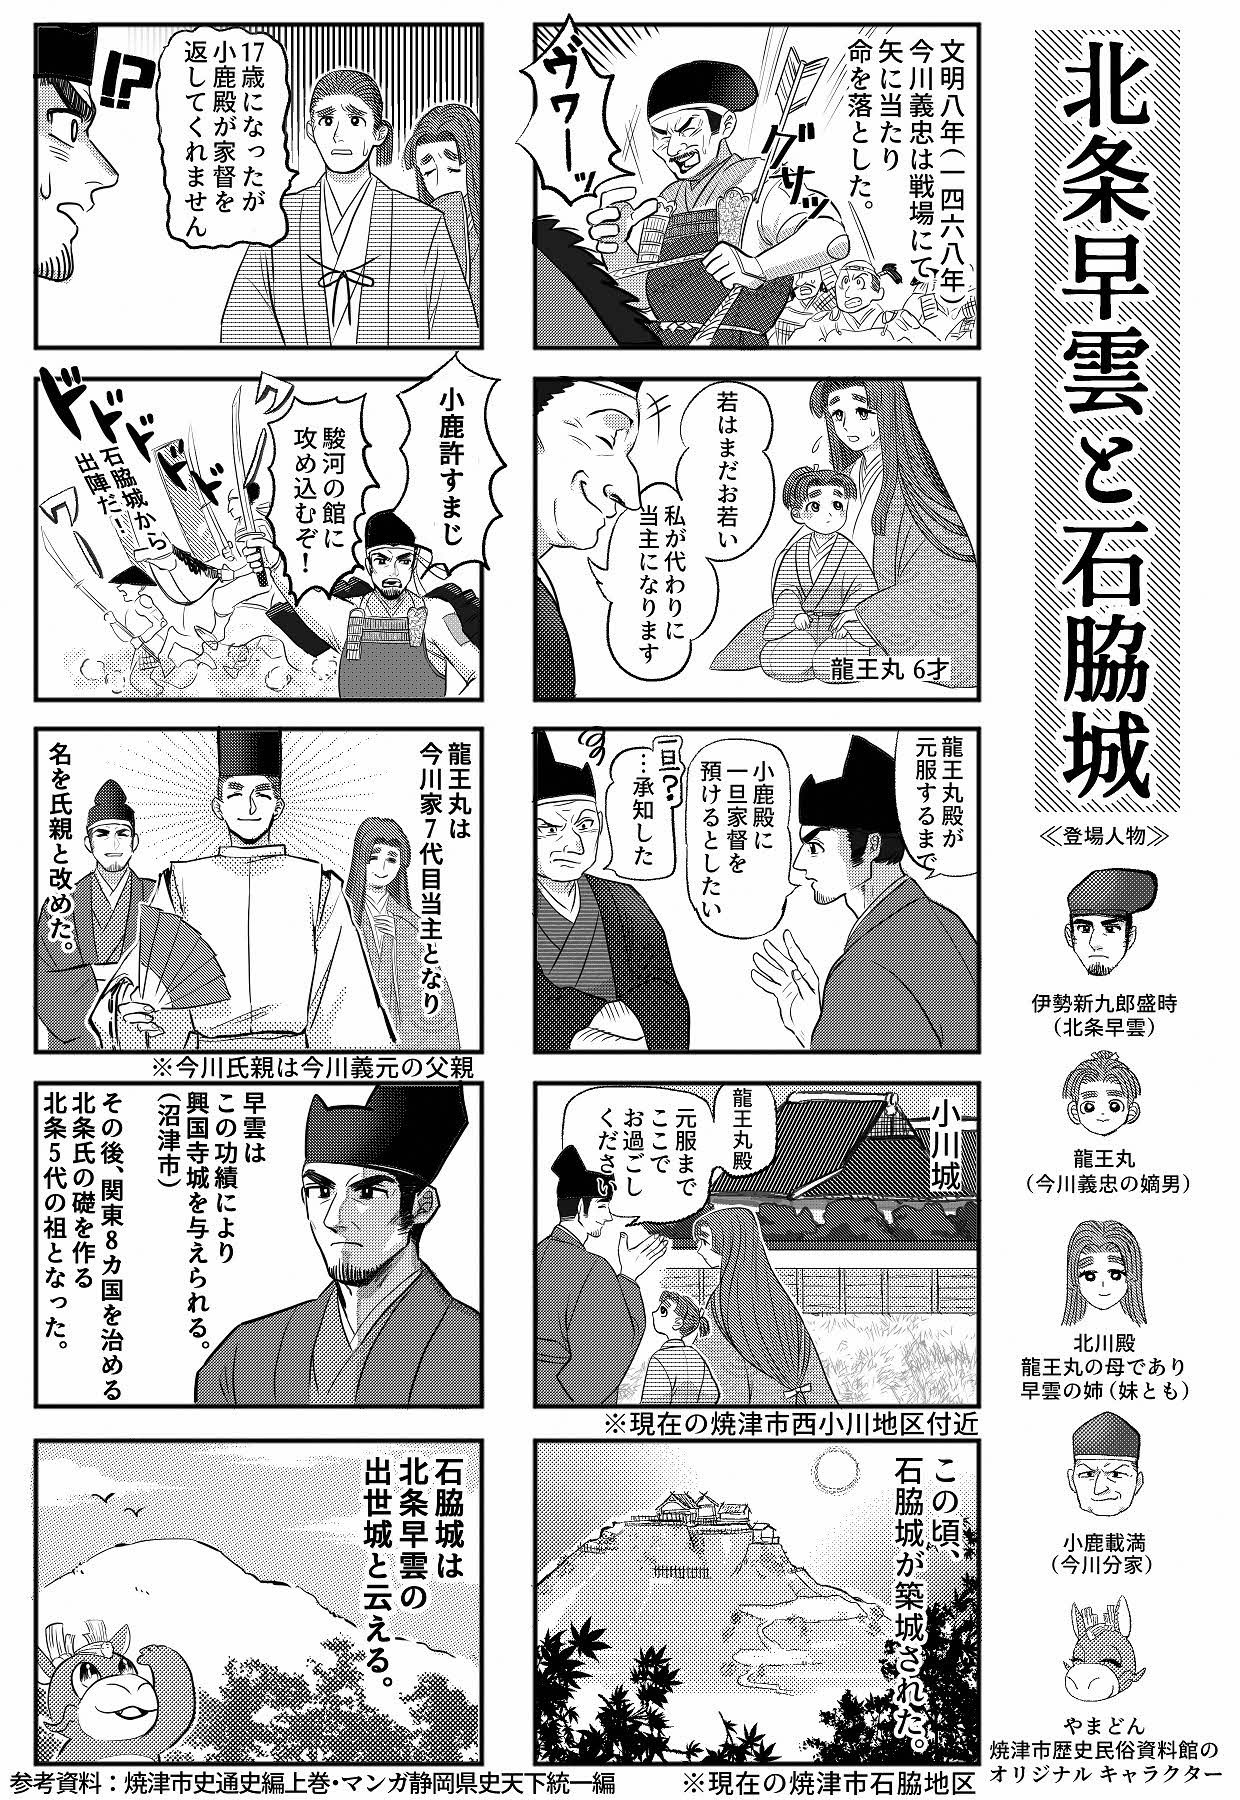 石脇城解説漫画